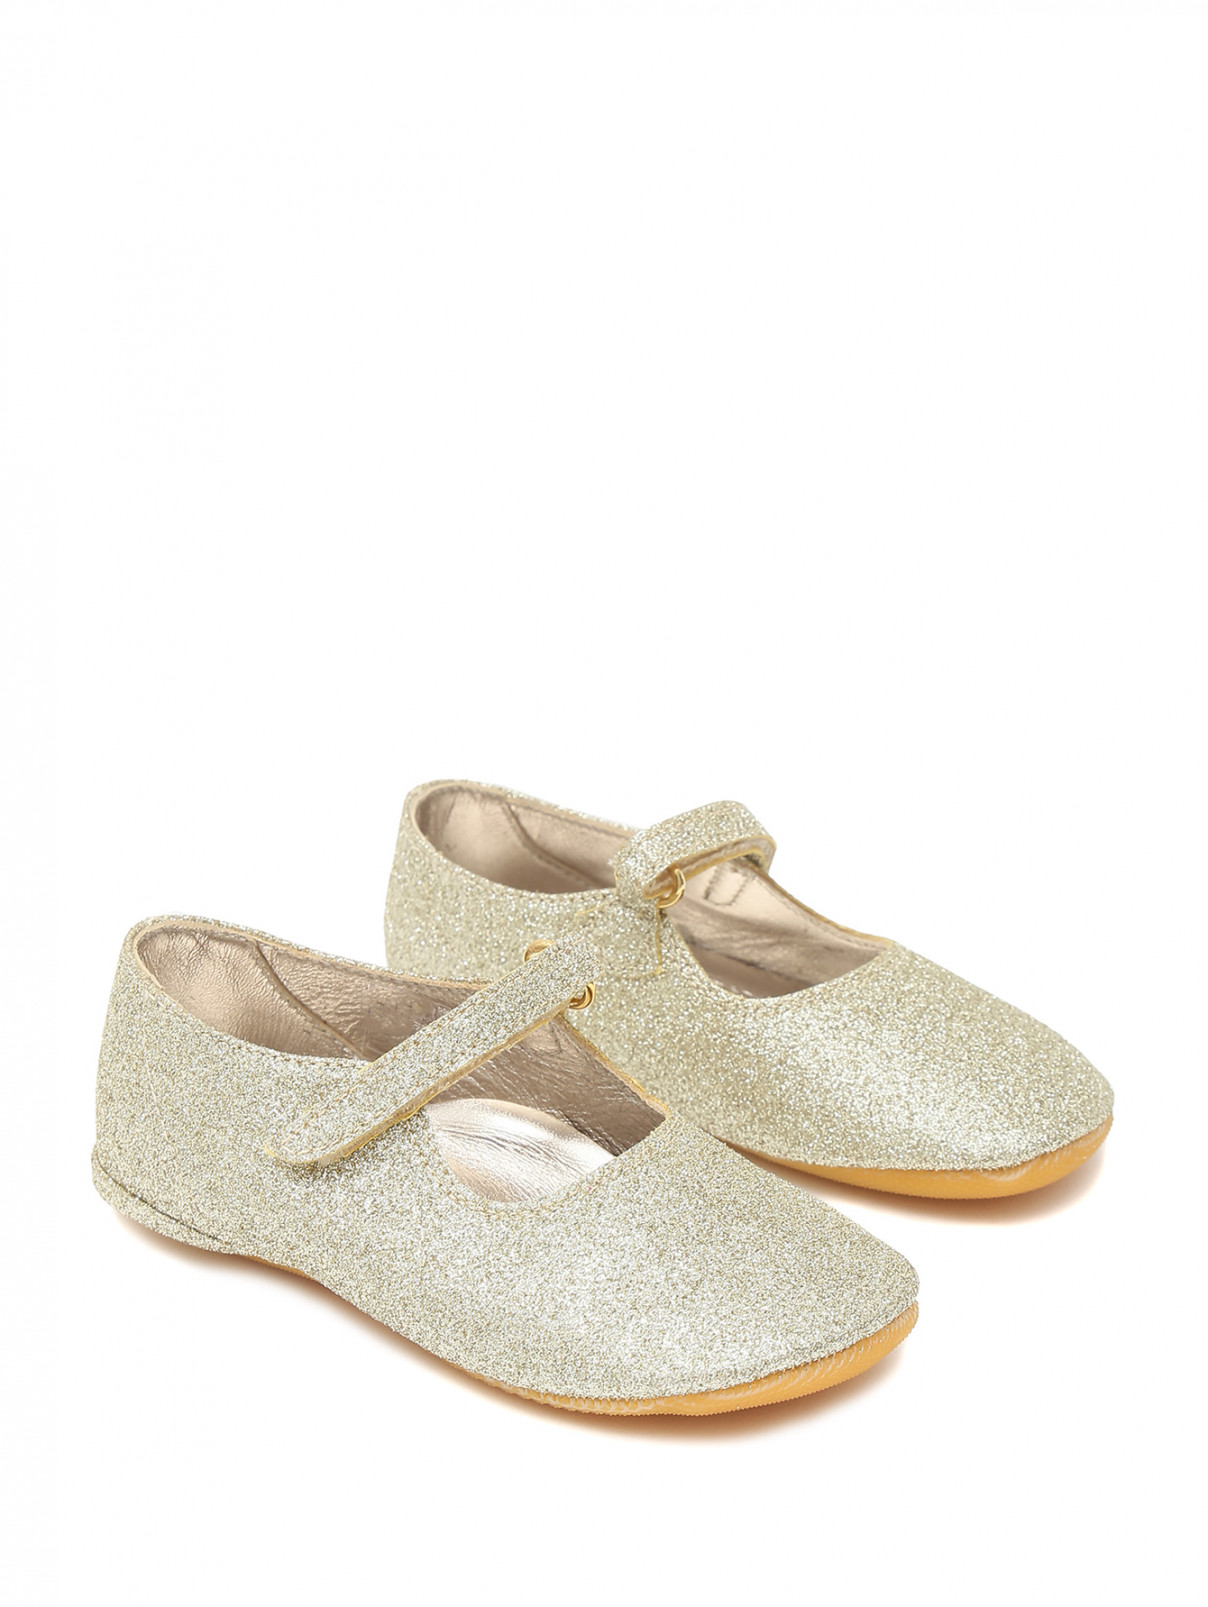 Туфли с блеском на липучке Gallucci  –  Общий вид  – Цвет:  Золотой